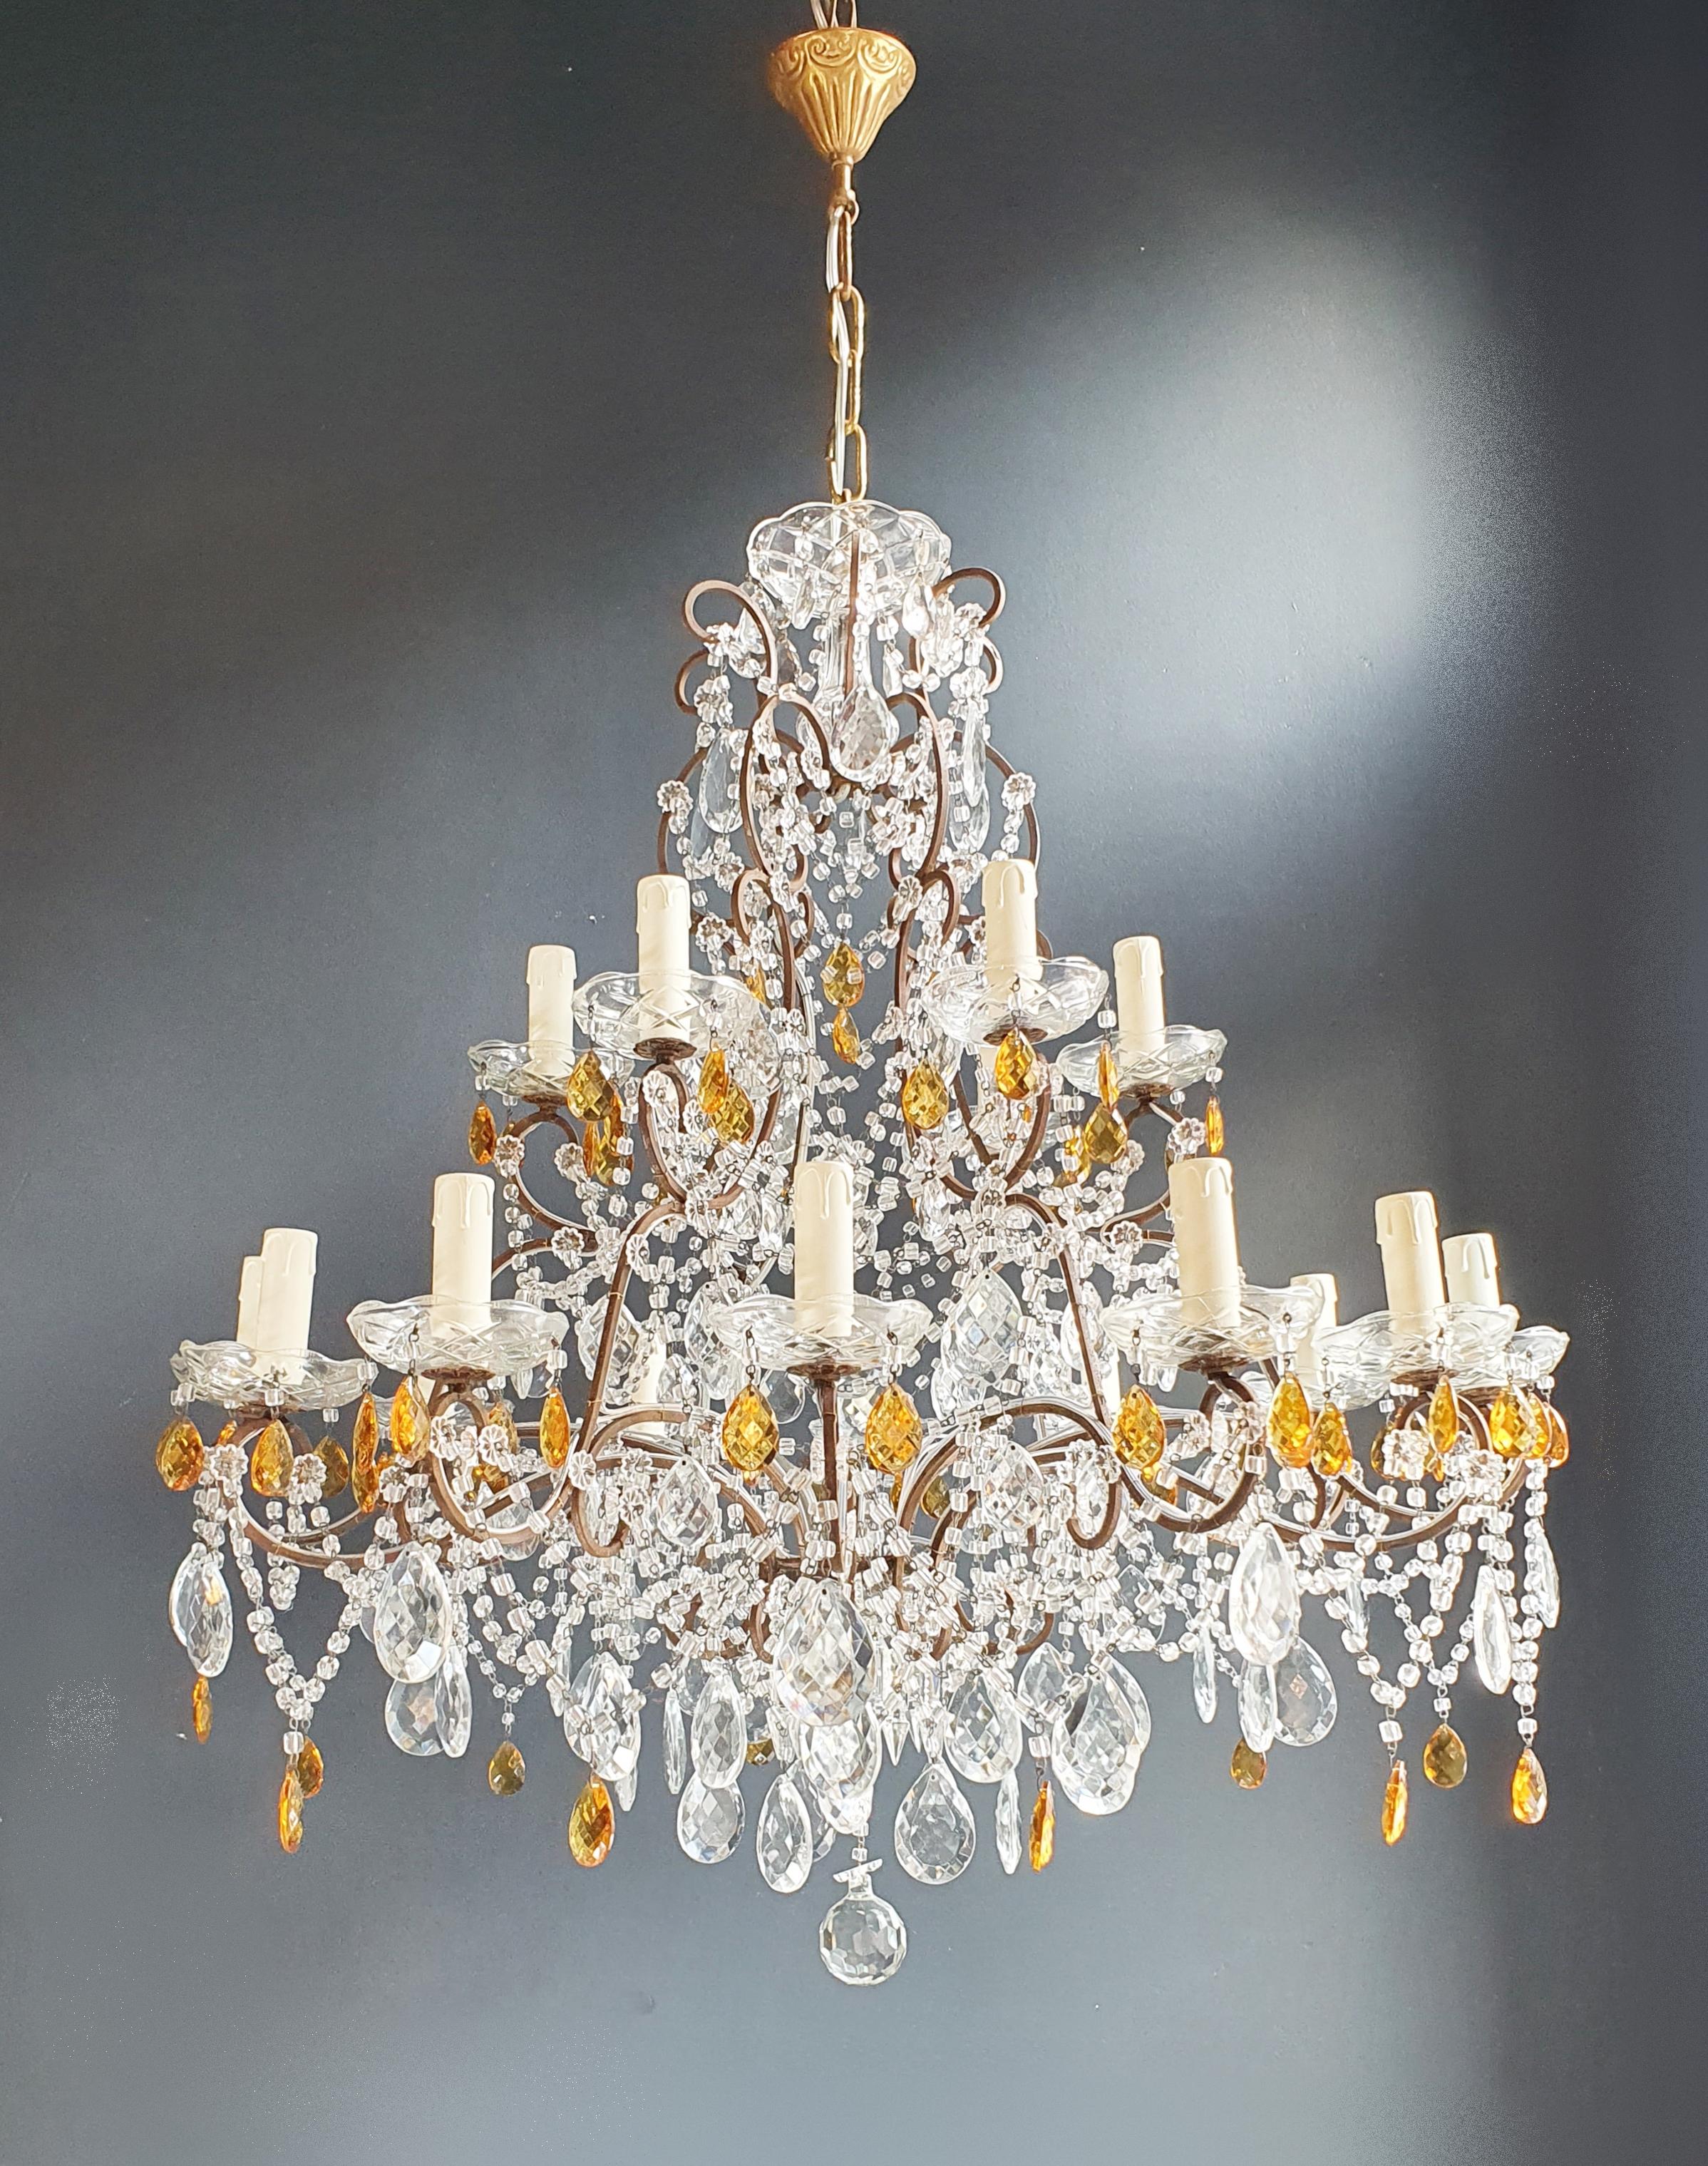 Amber Crystal Antique Chandelier Ceiling Florentiner Lustre Art Nouveau For Sale 4